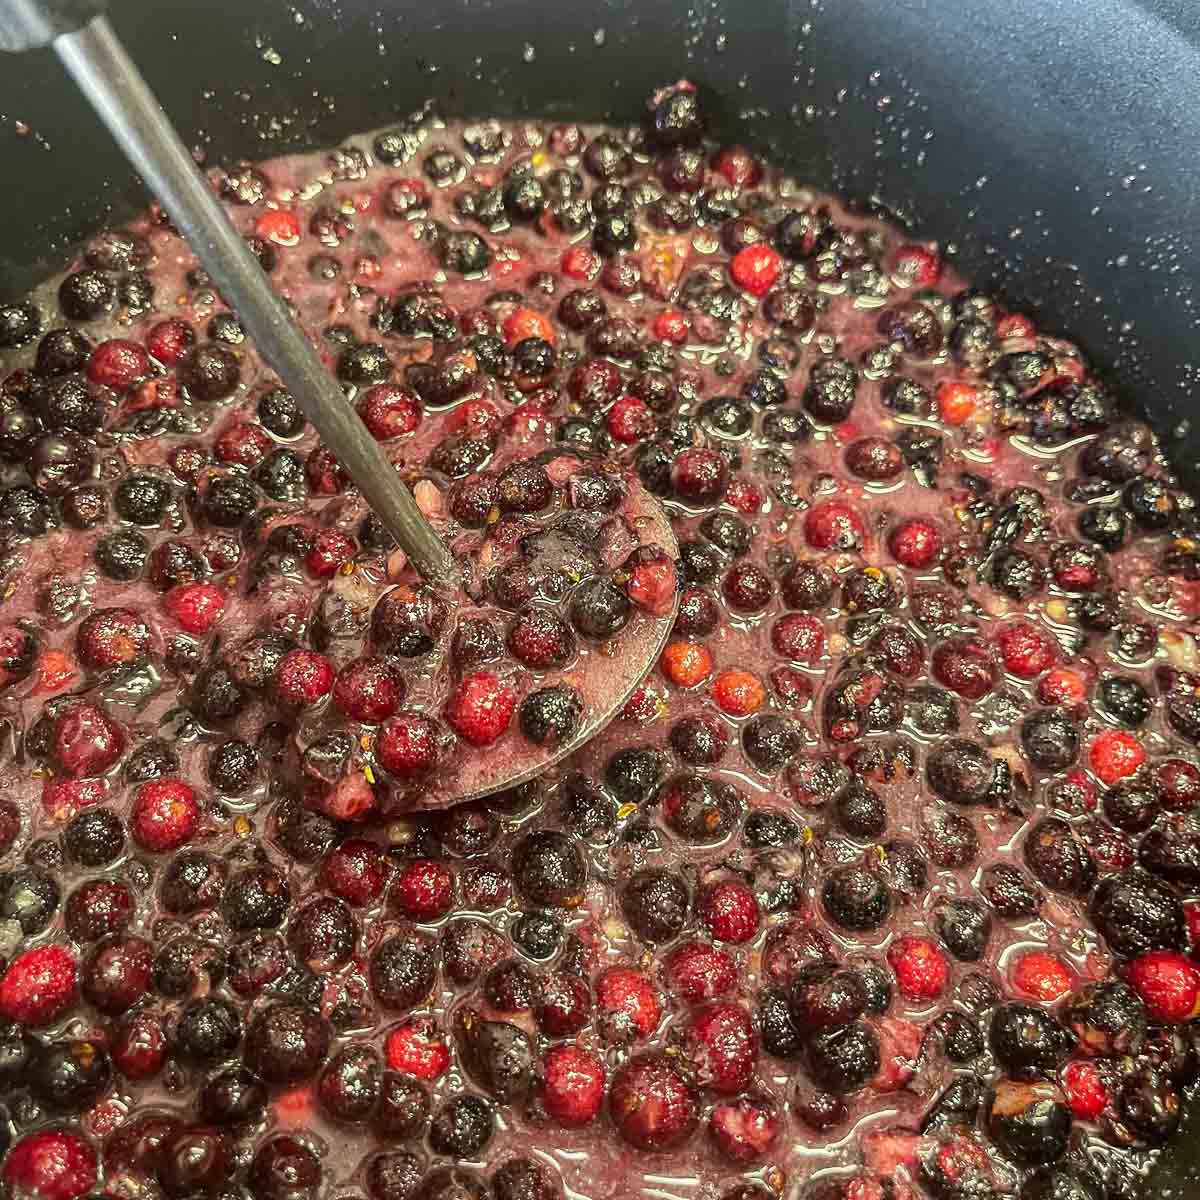 saskatoon berries being mashed